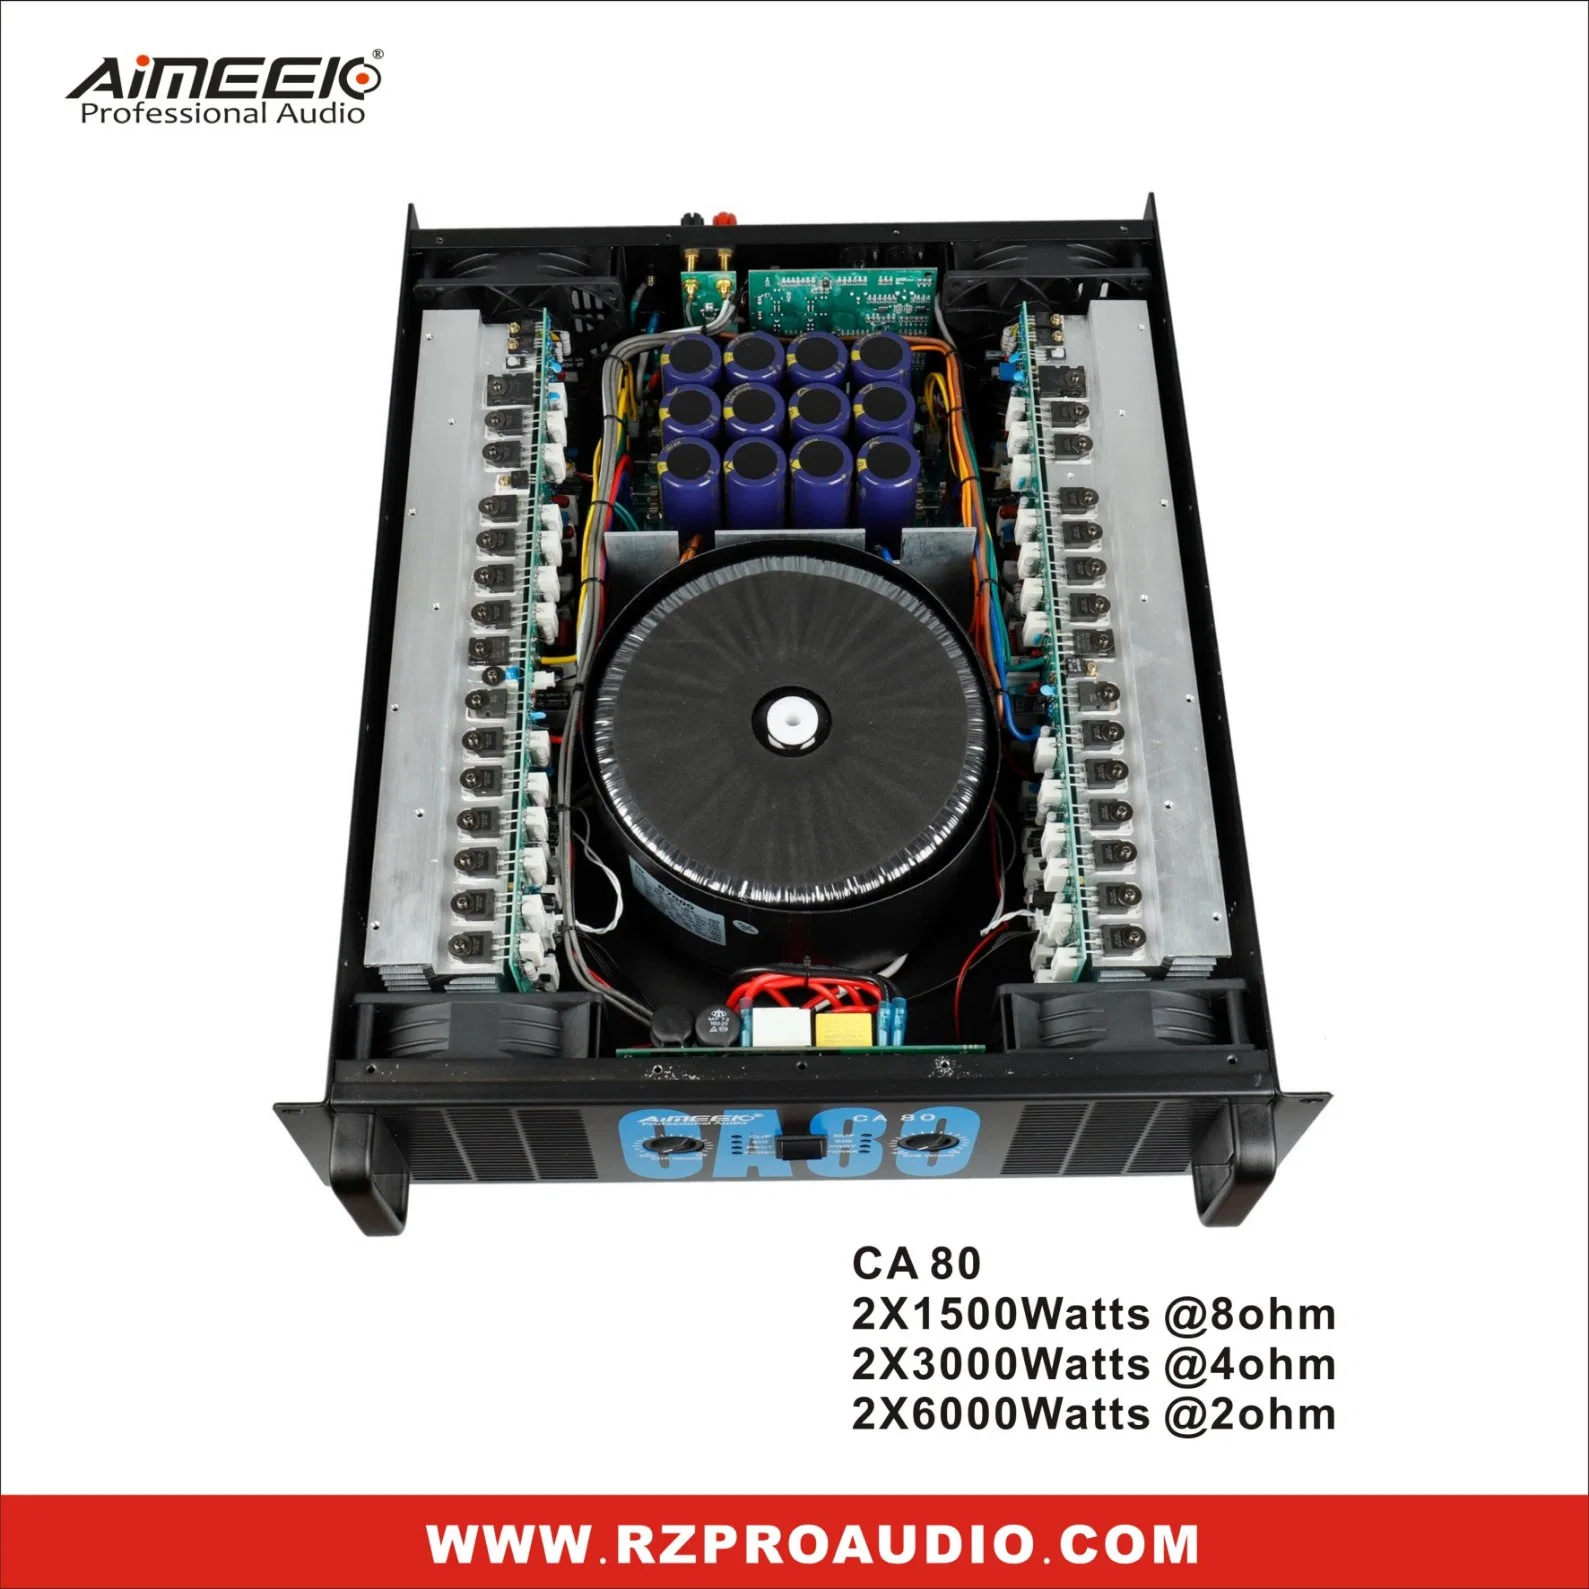 Amplificador de potencia profesional de audio de 3000W Ca80 para sistema de sonido al aire libre